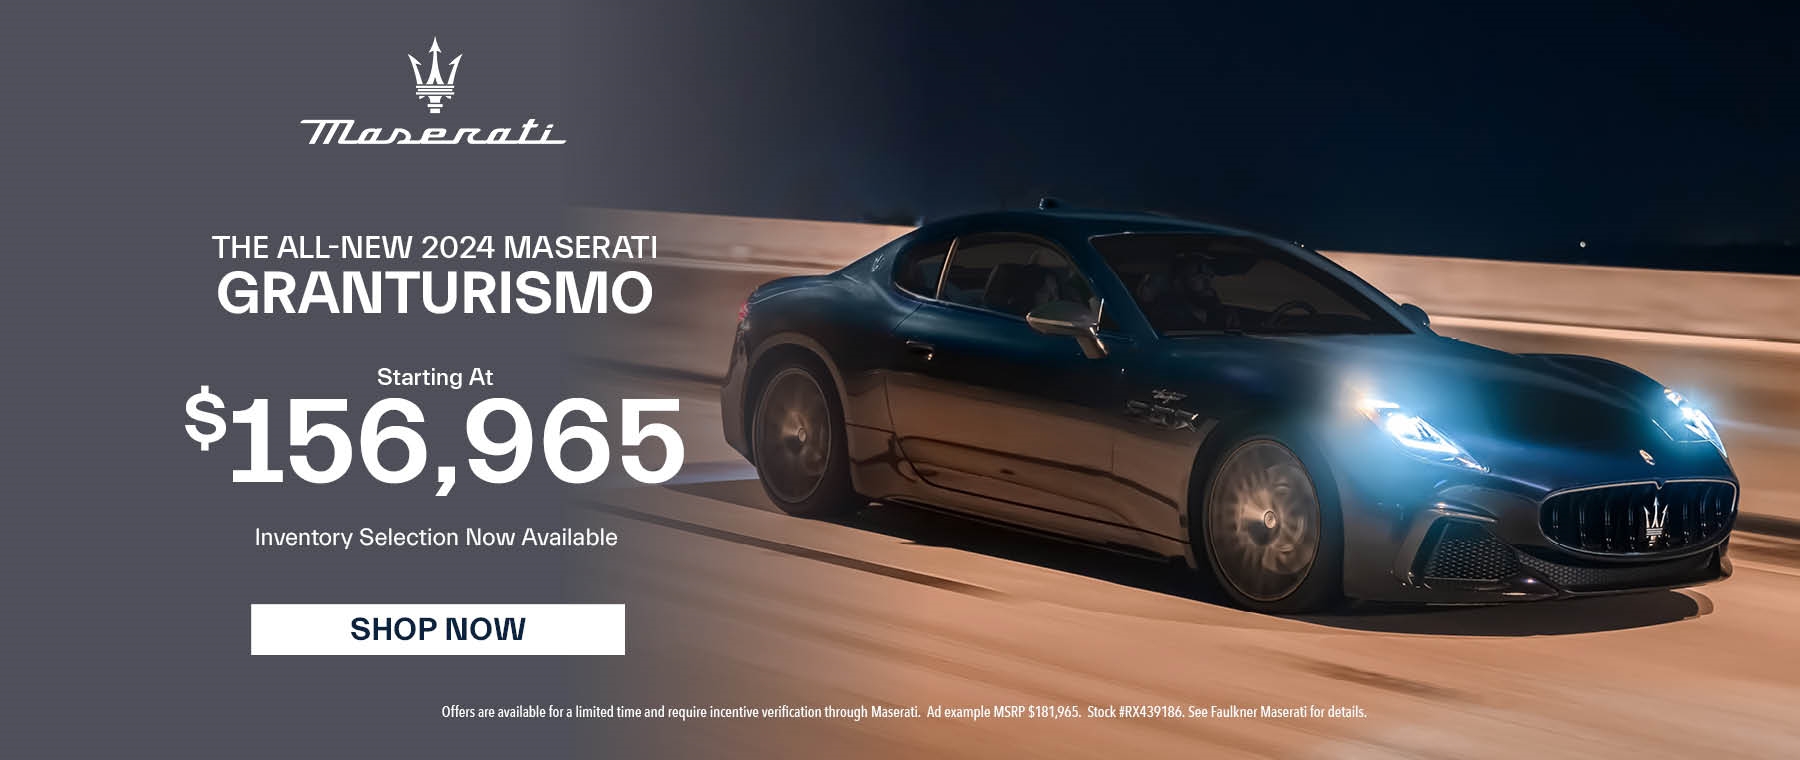 The All-New 2024 Maserati GranTurismo